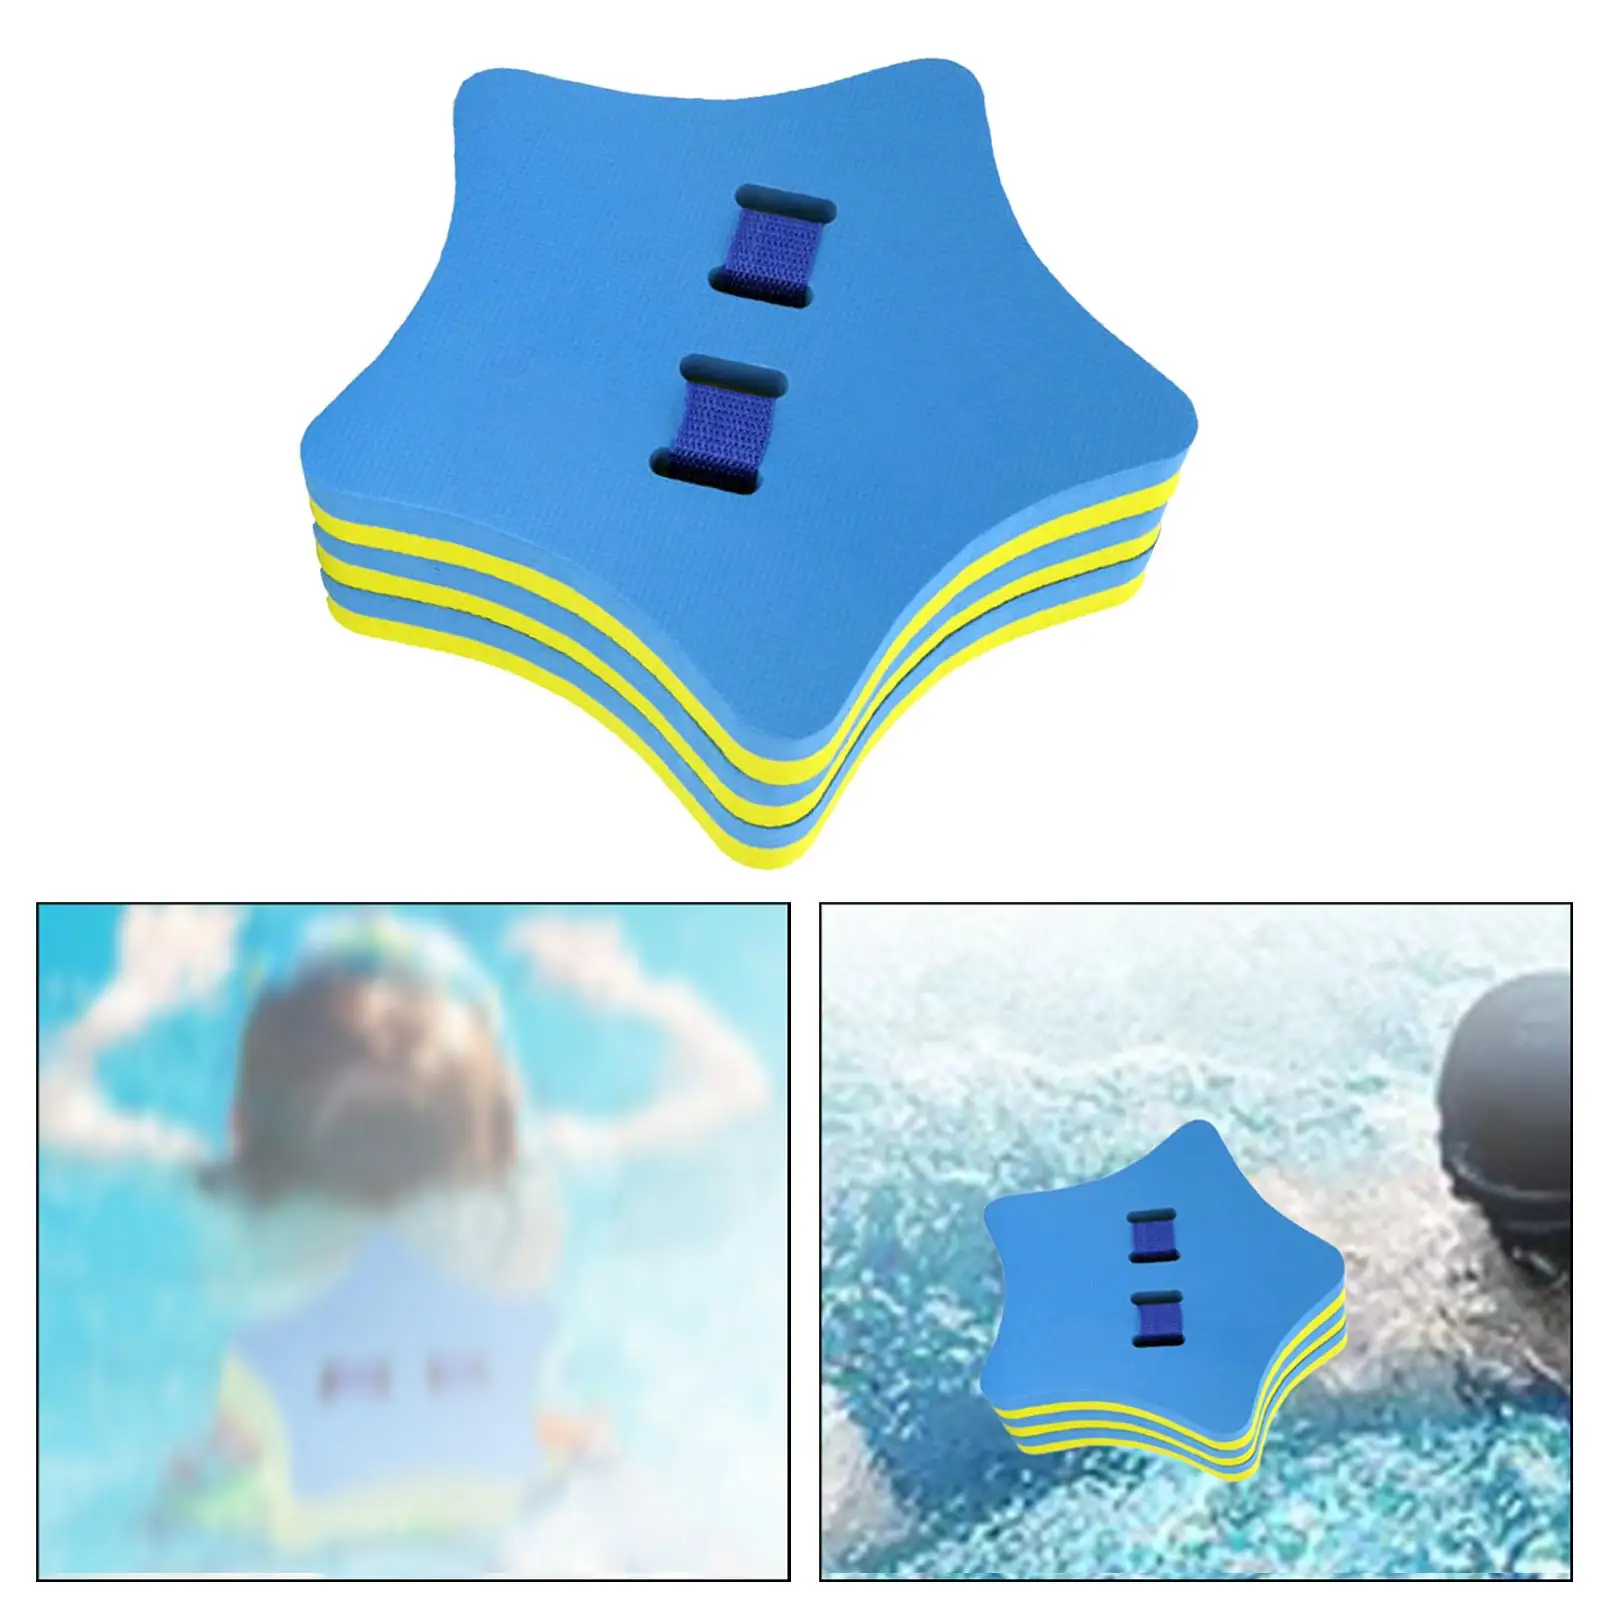 Adjustable Back foam floating Belt Waist Buoyancy Lightweight Fun Summer